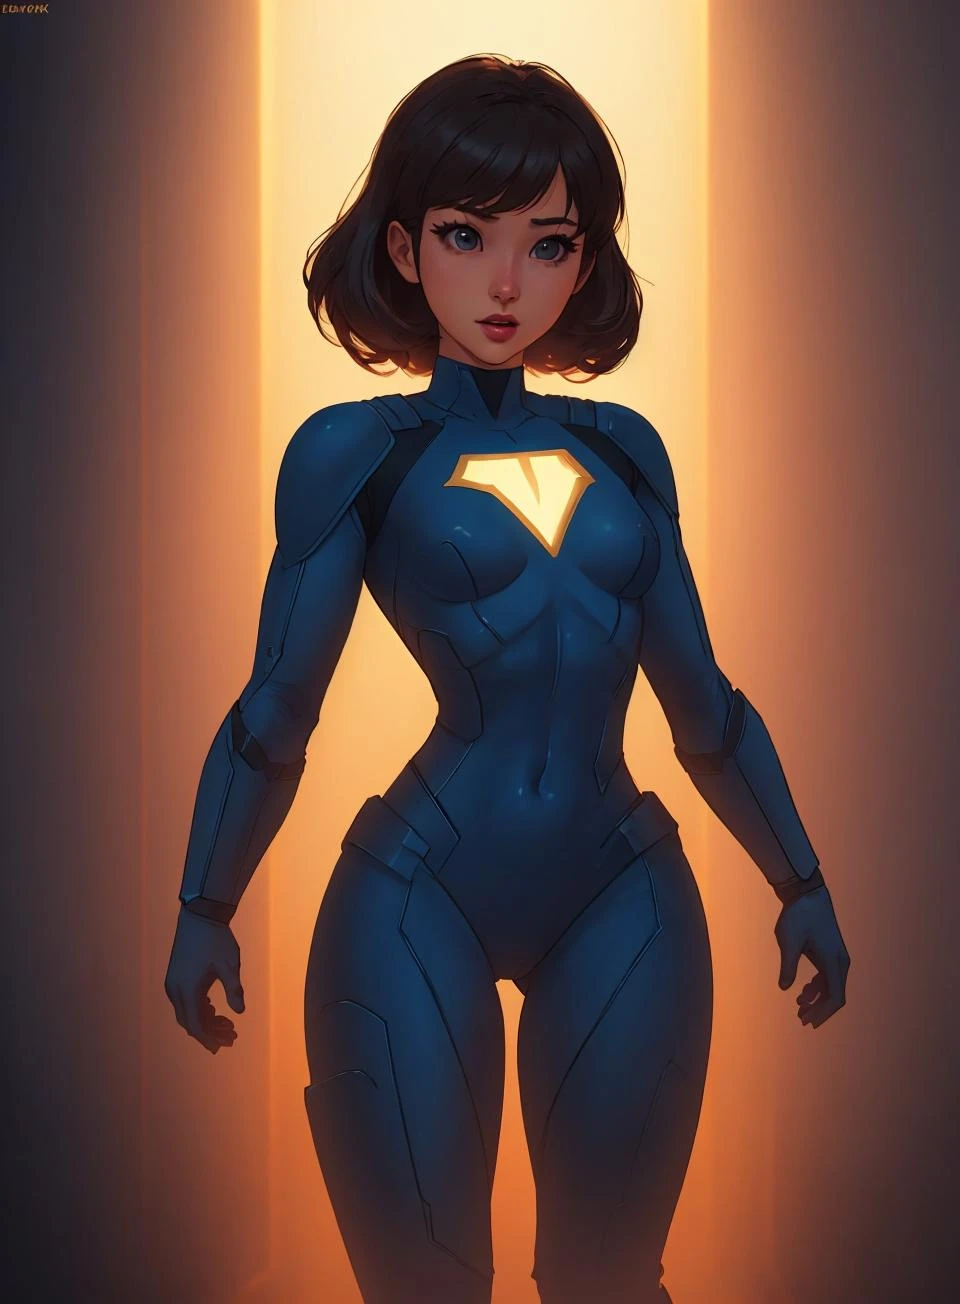 一个可爱的超级英雄女孩, 平胸, 可爱的超级英雄套装电影灯光, 大衛帕克, 燈,